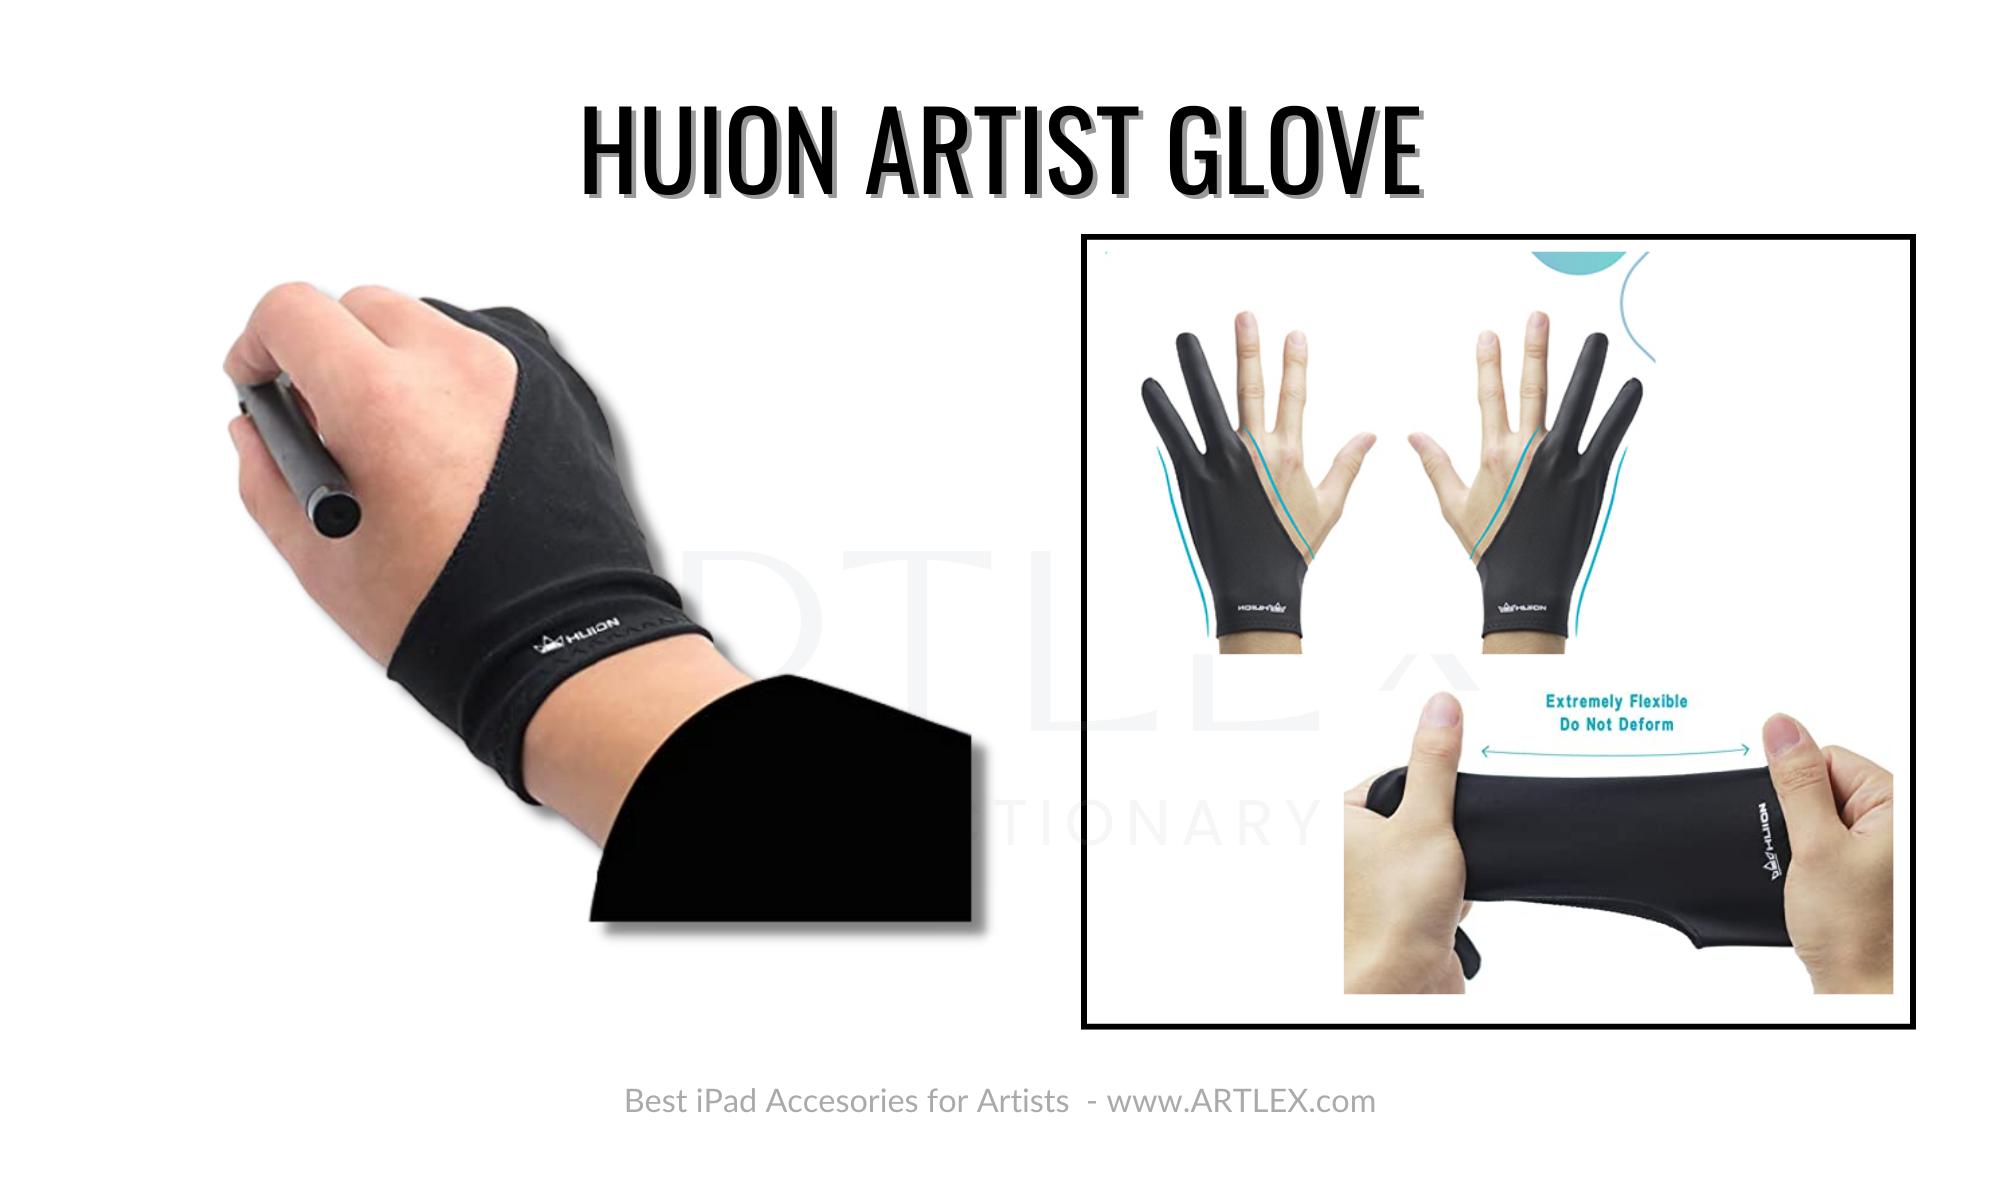 Best Artist Glove for iPad - Huion Artist Glove